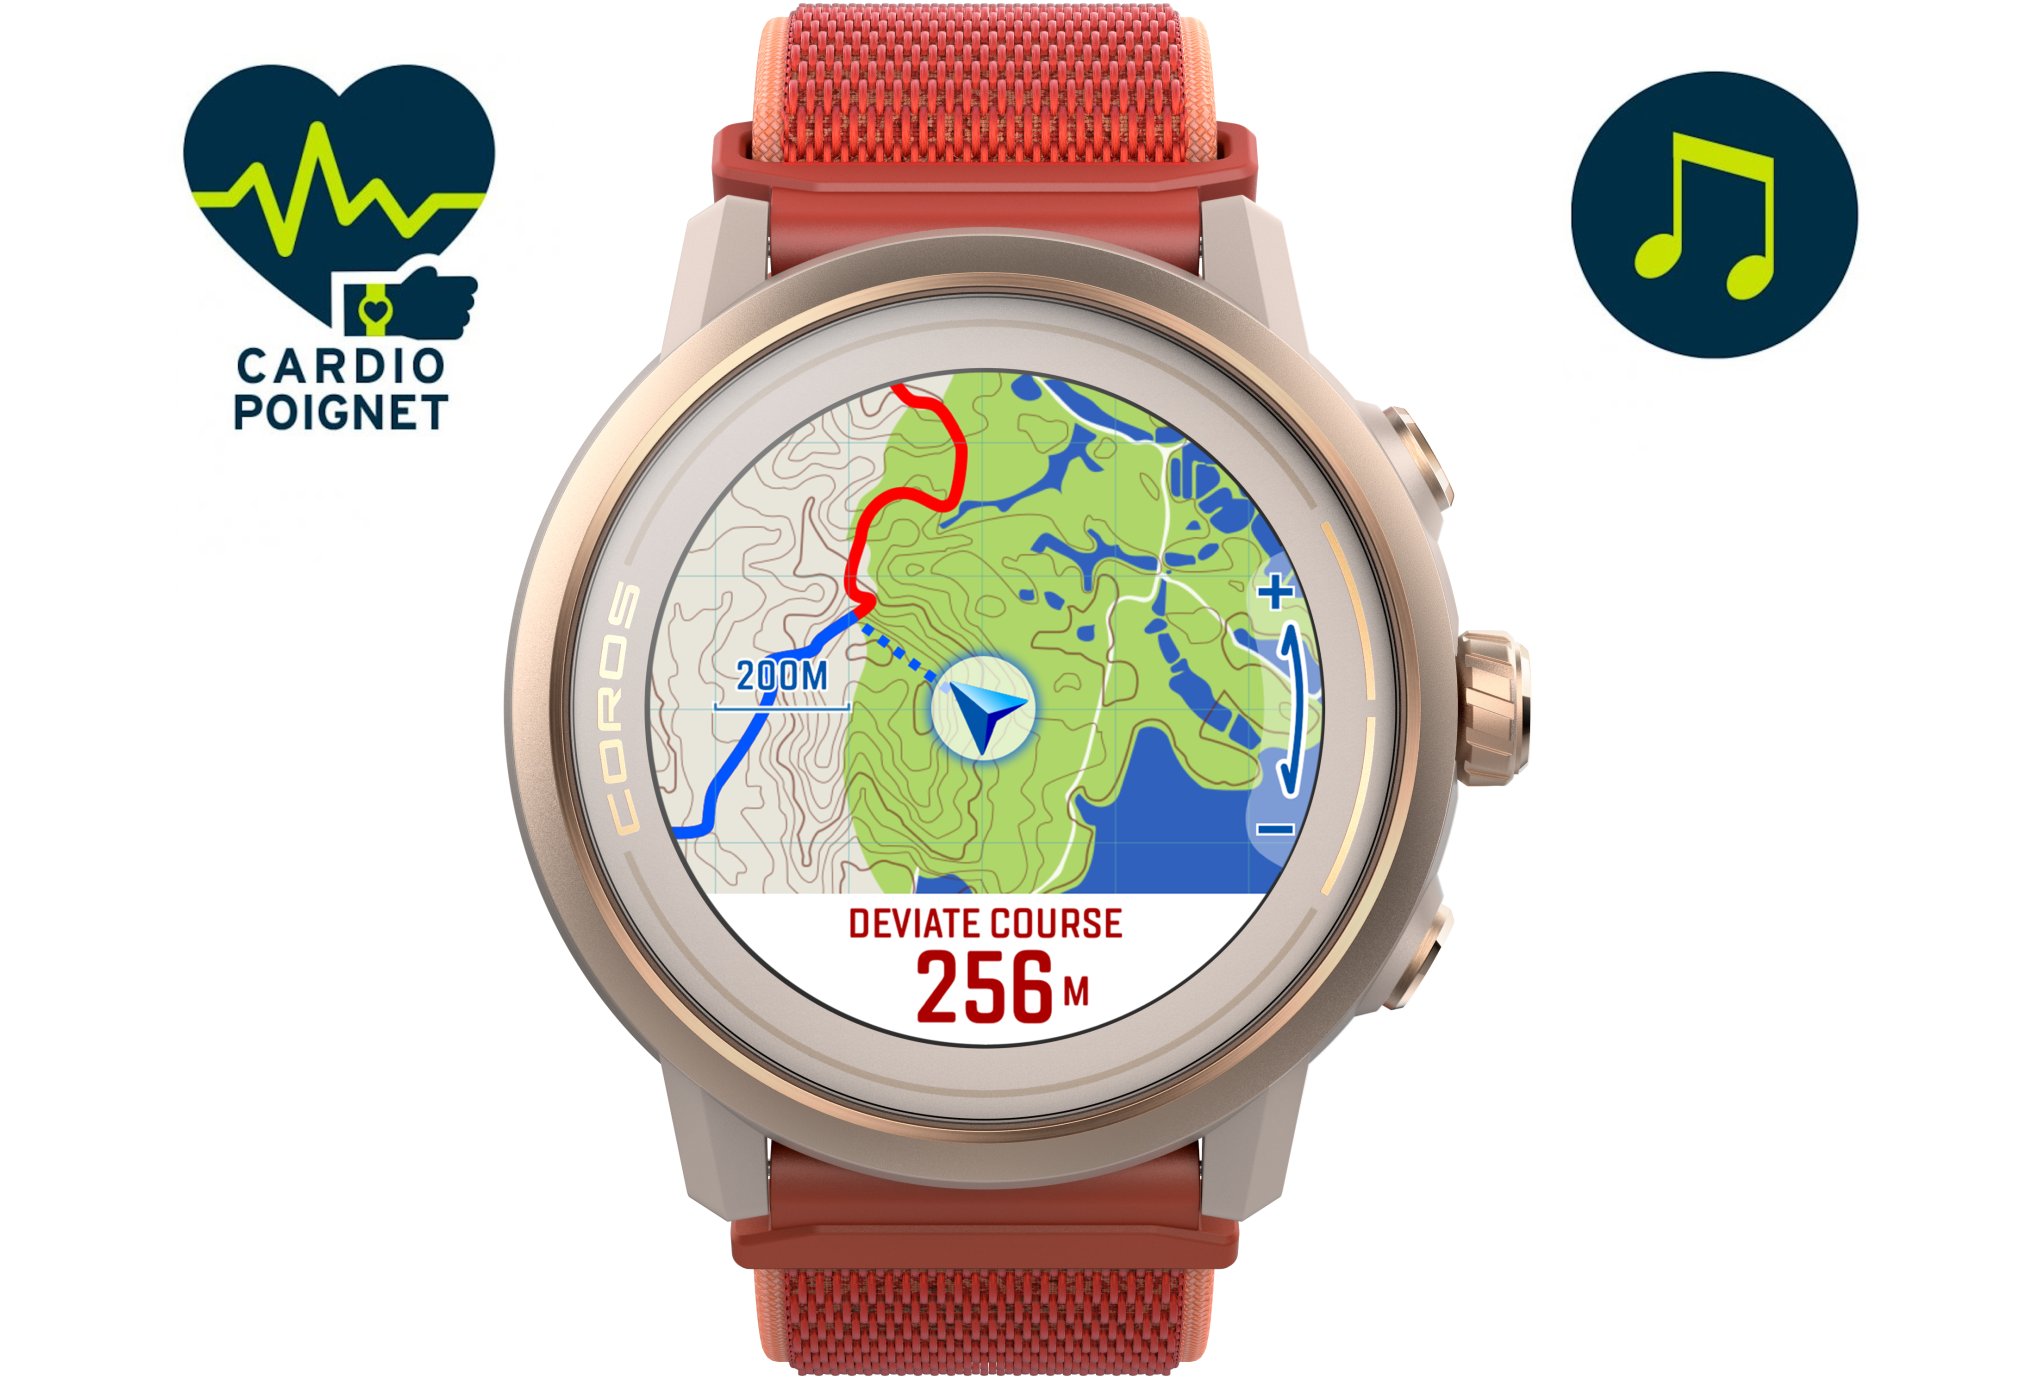 La Coros Vertix 2, nouvelle meilleure montre GPS !